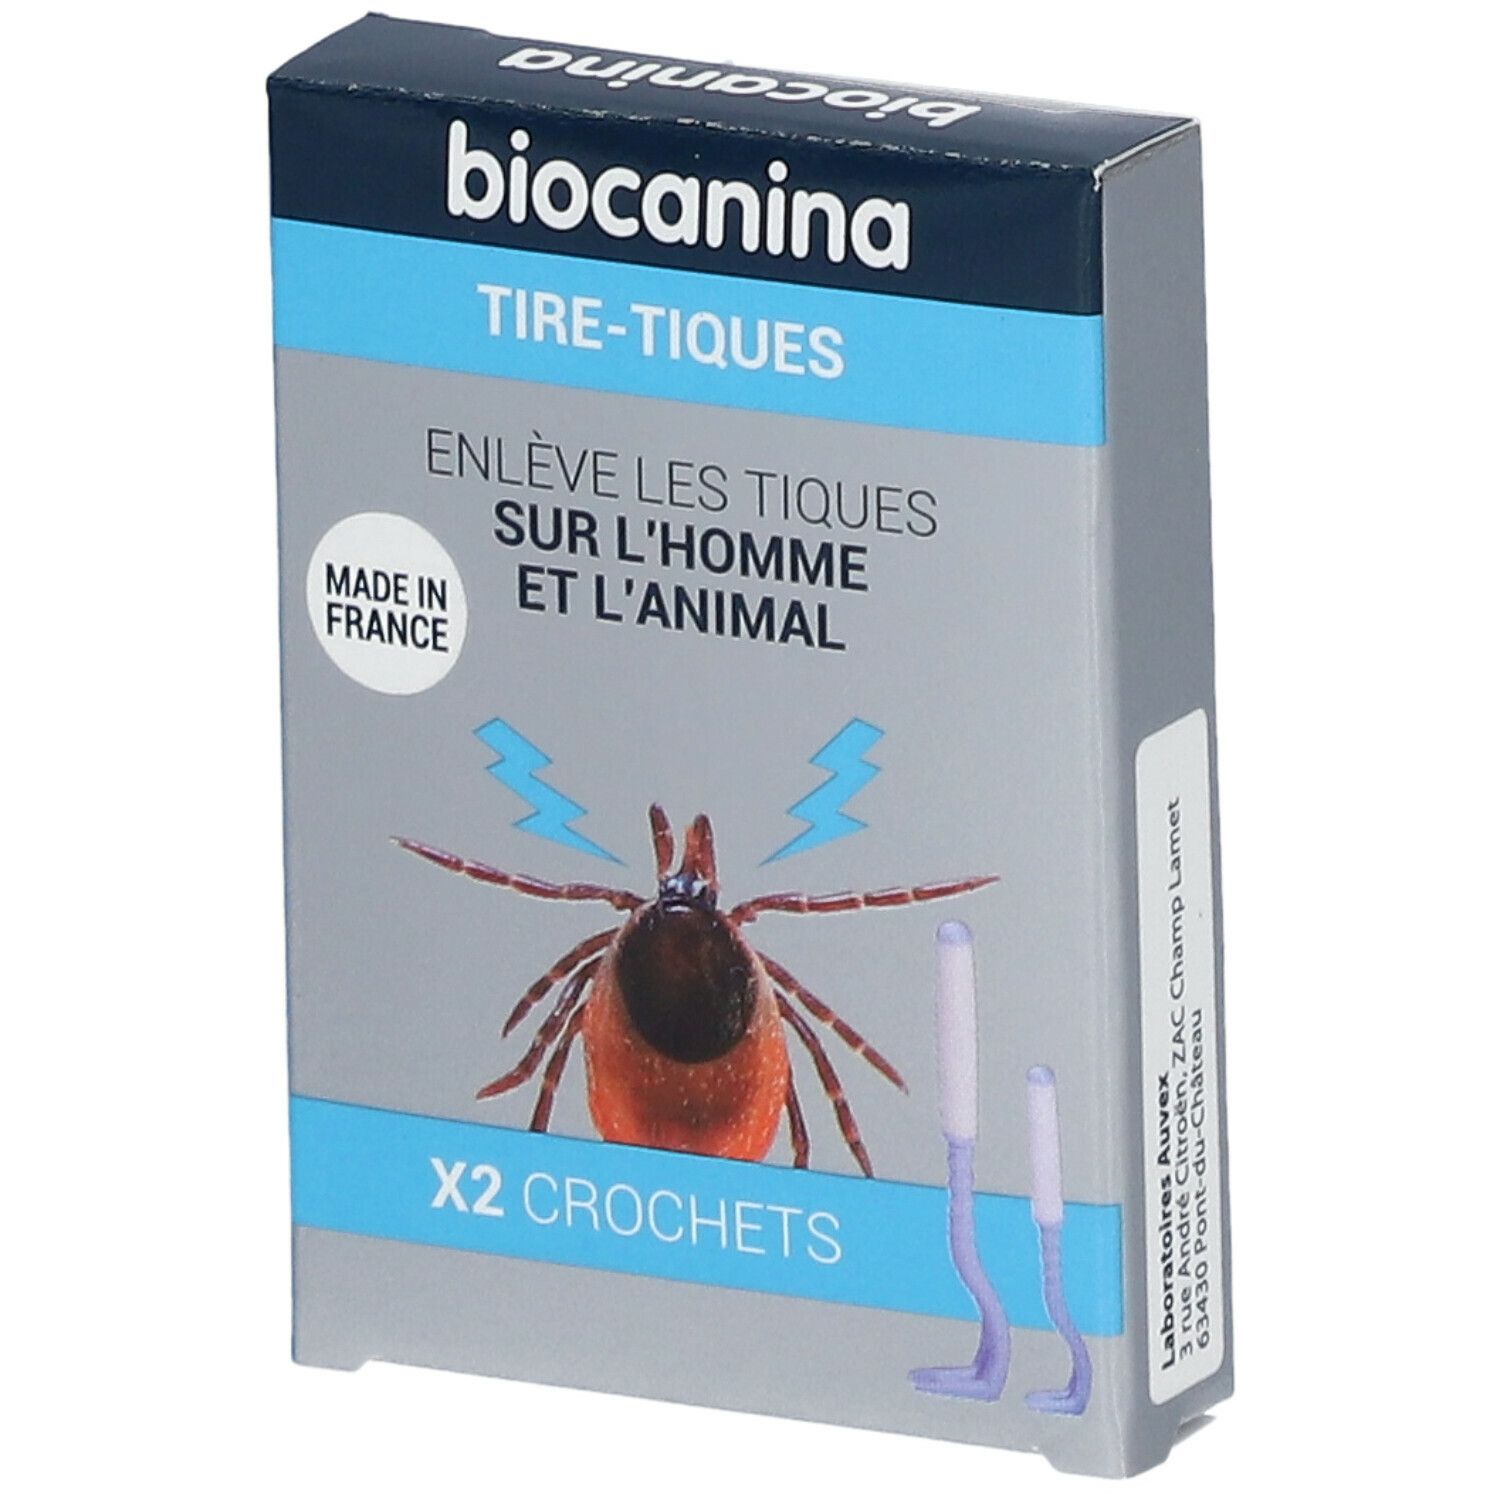 biocanina Tire-Tiques